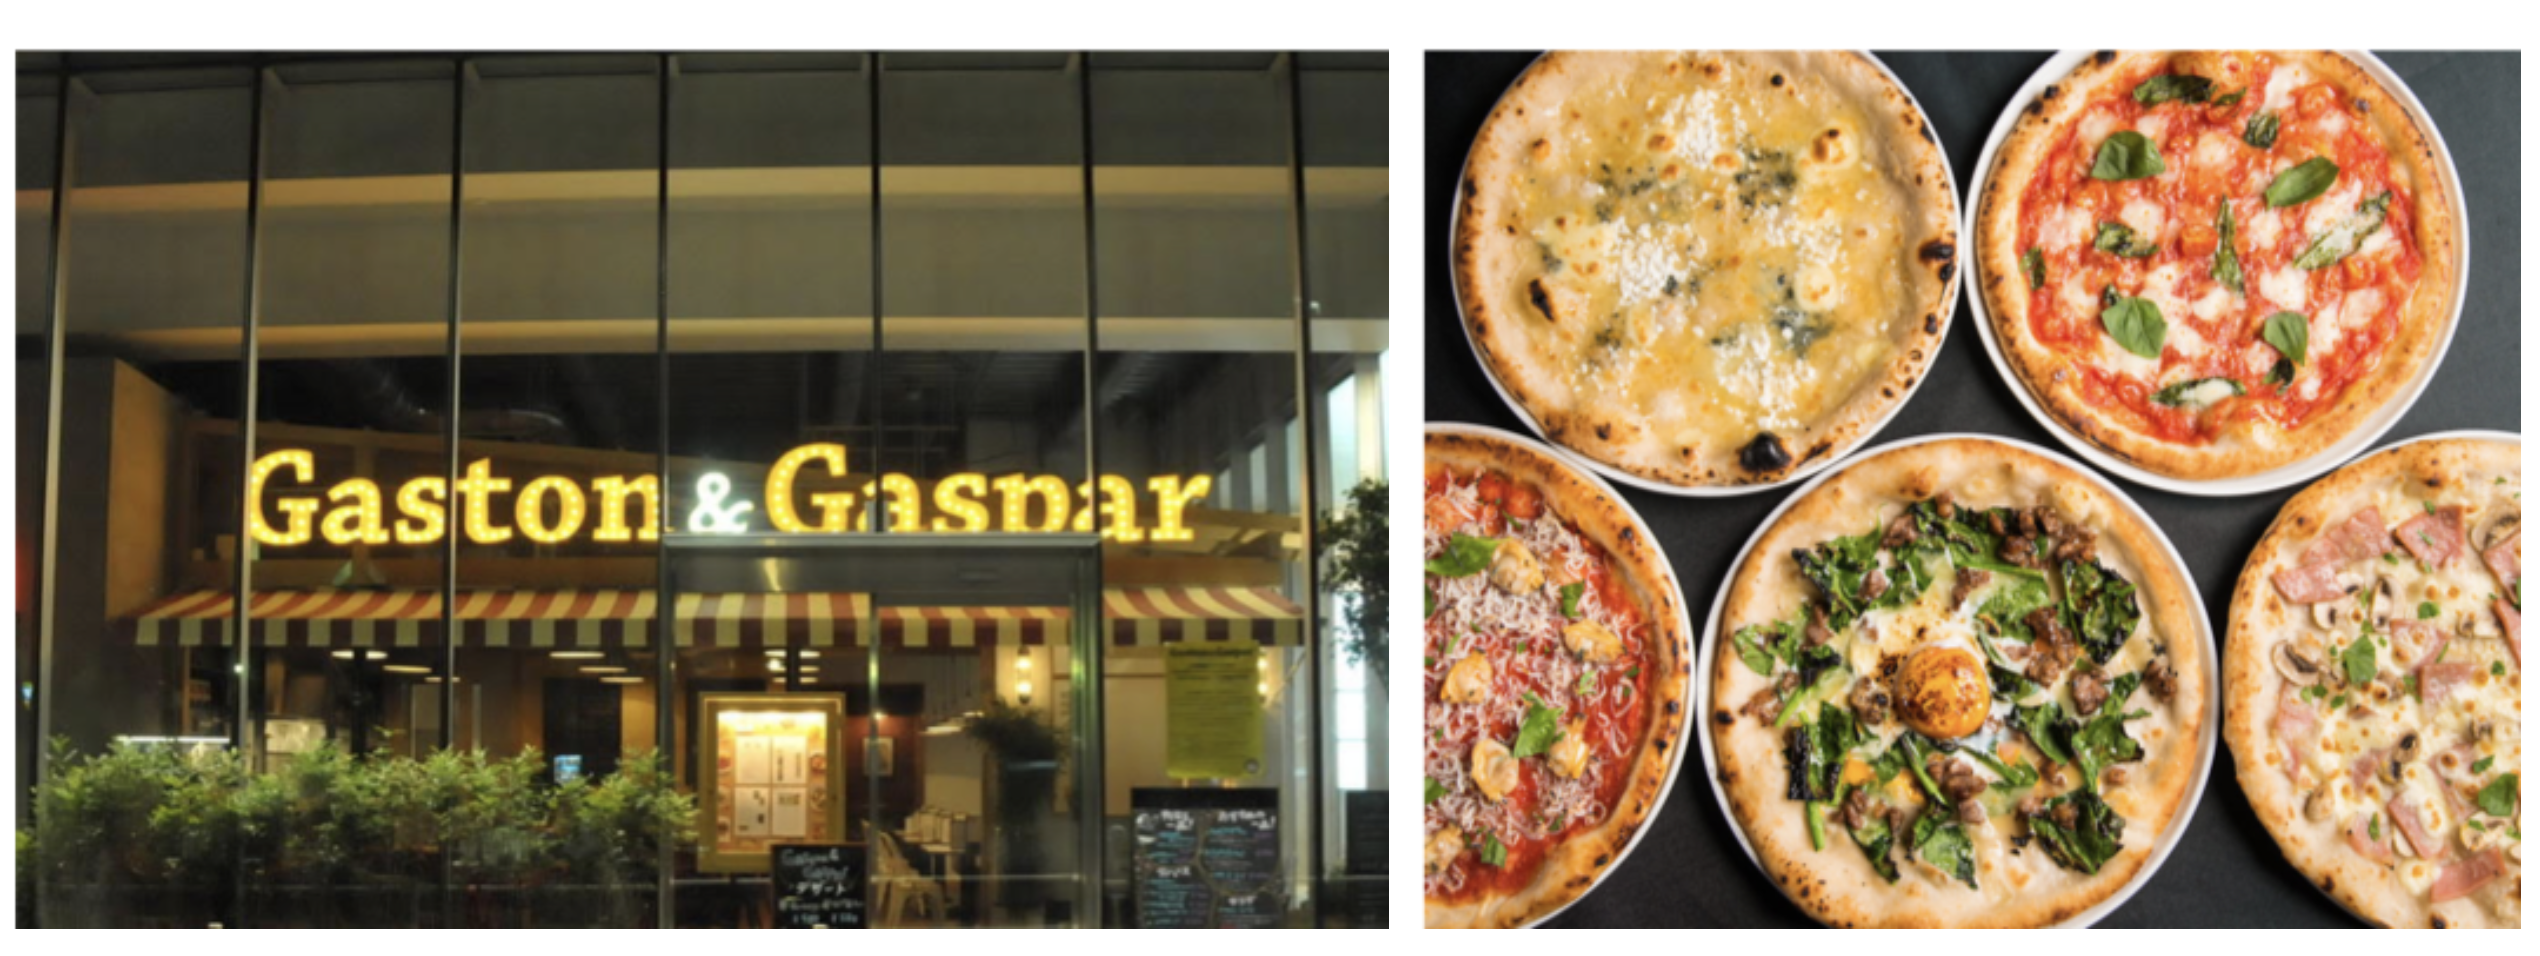 食べて仮想通貨が貯まるグルメsns シンクロライフ に Gaston Gaspar を運営するggグループ6店舗が登場 株式会社ginkanのプレスリリース